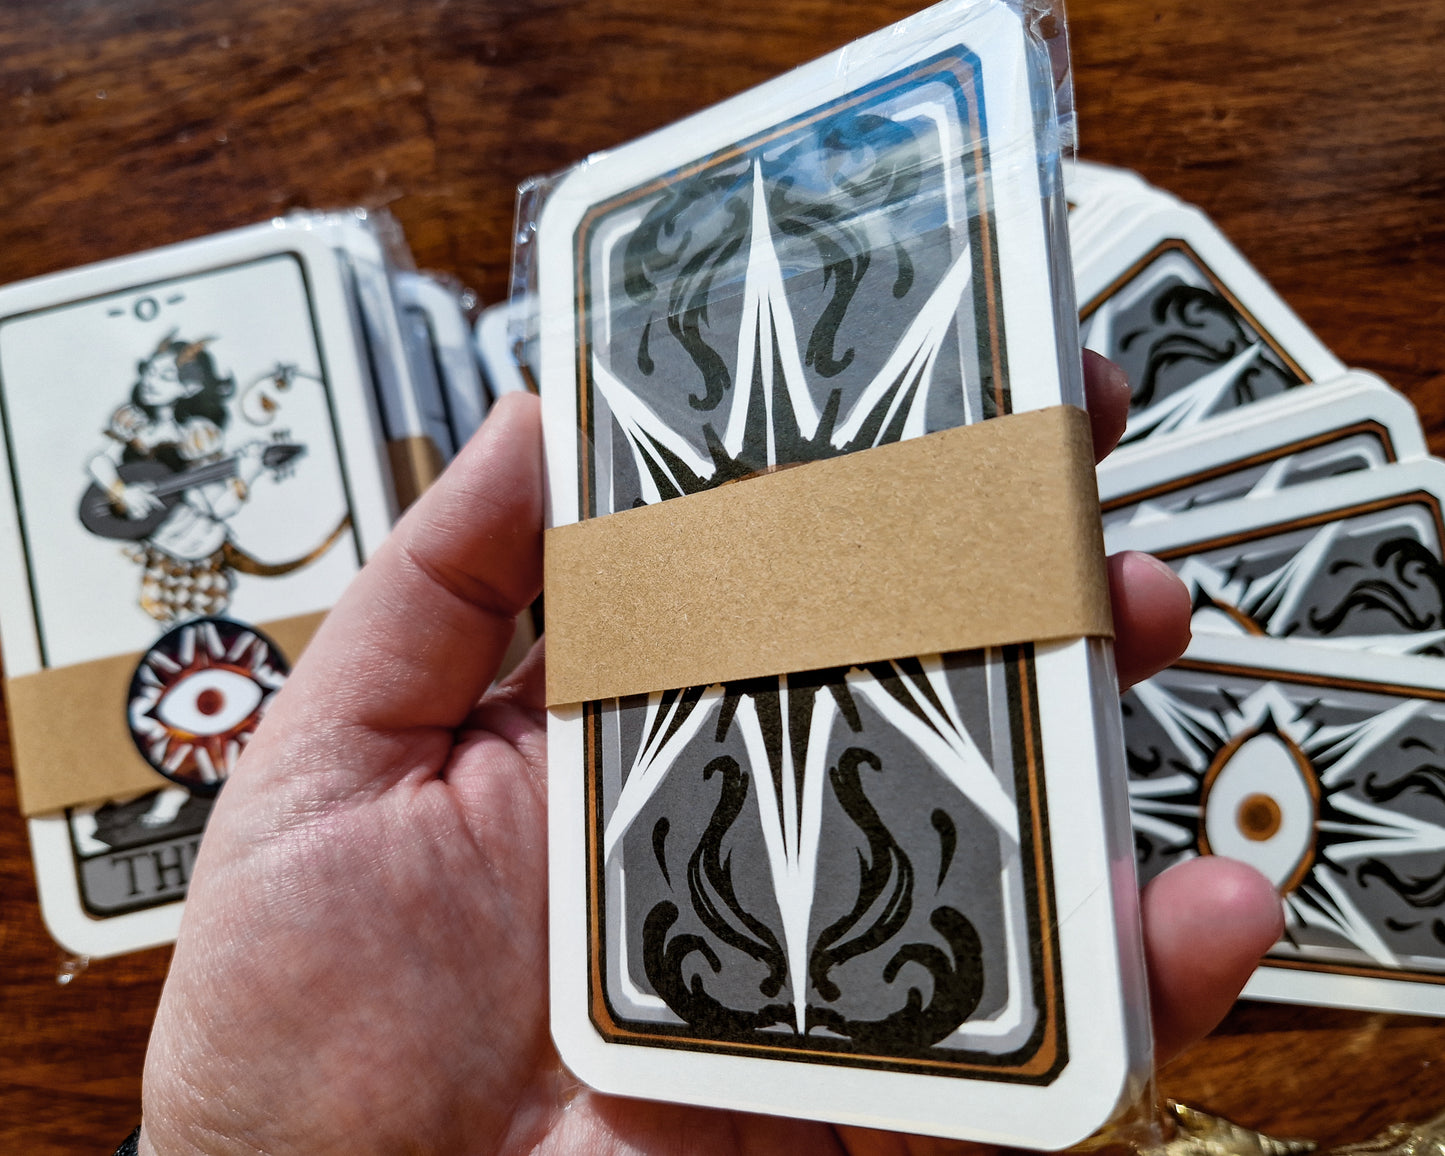 The Omens Tarot - Major Arcana Tarot Deck, 22 cards